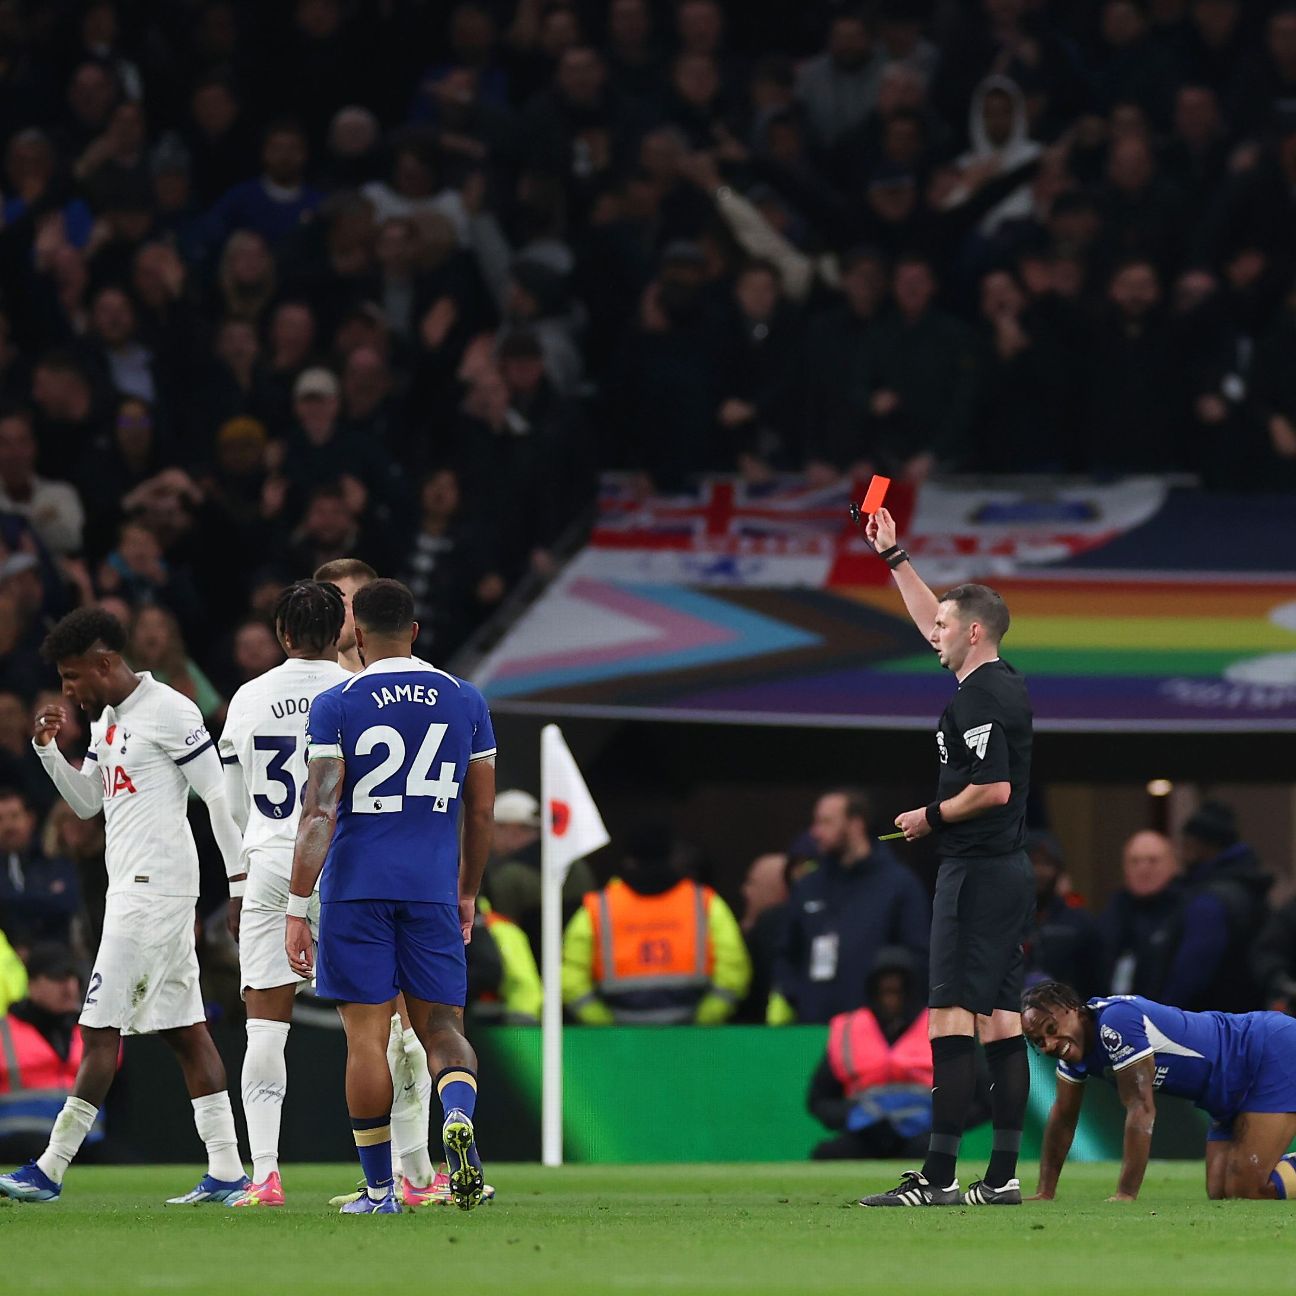 Full Match: Tottenham 1-4 Chelsea, Video